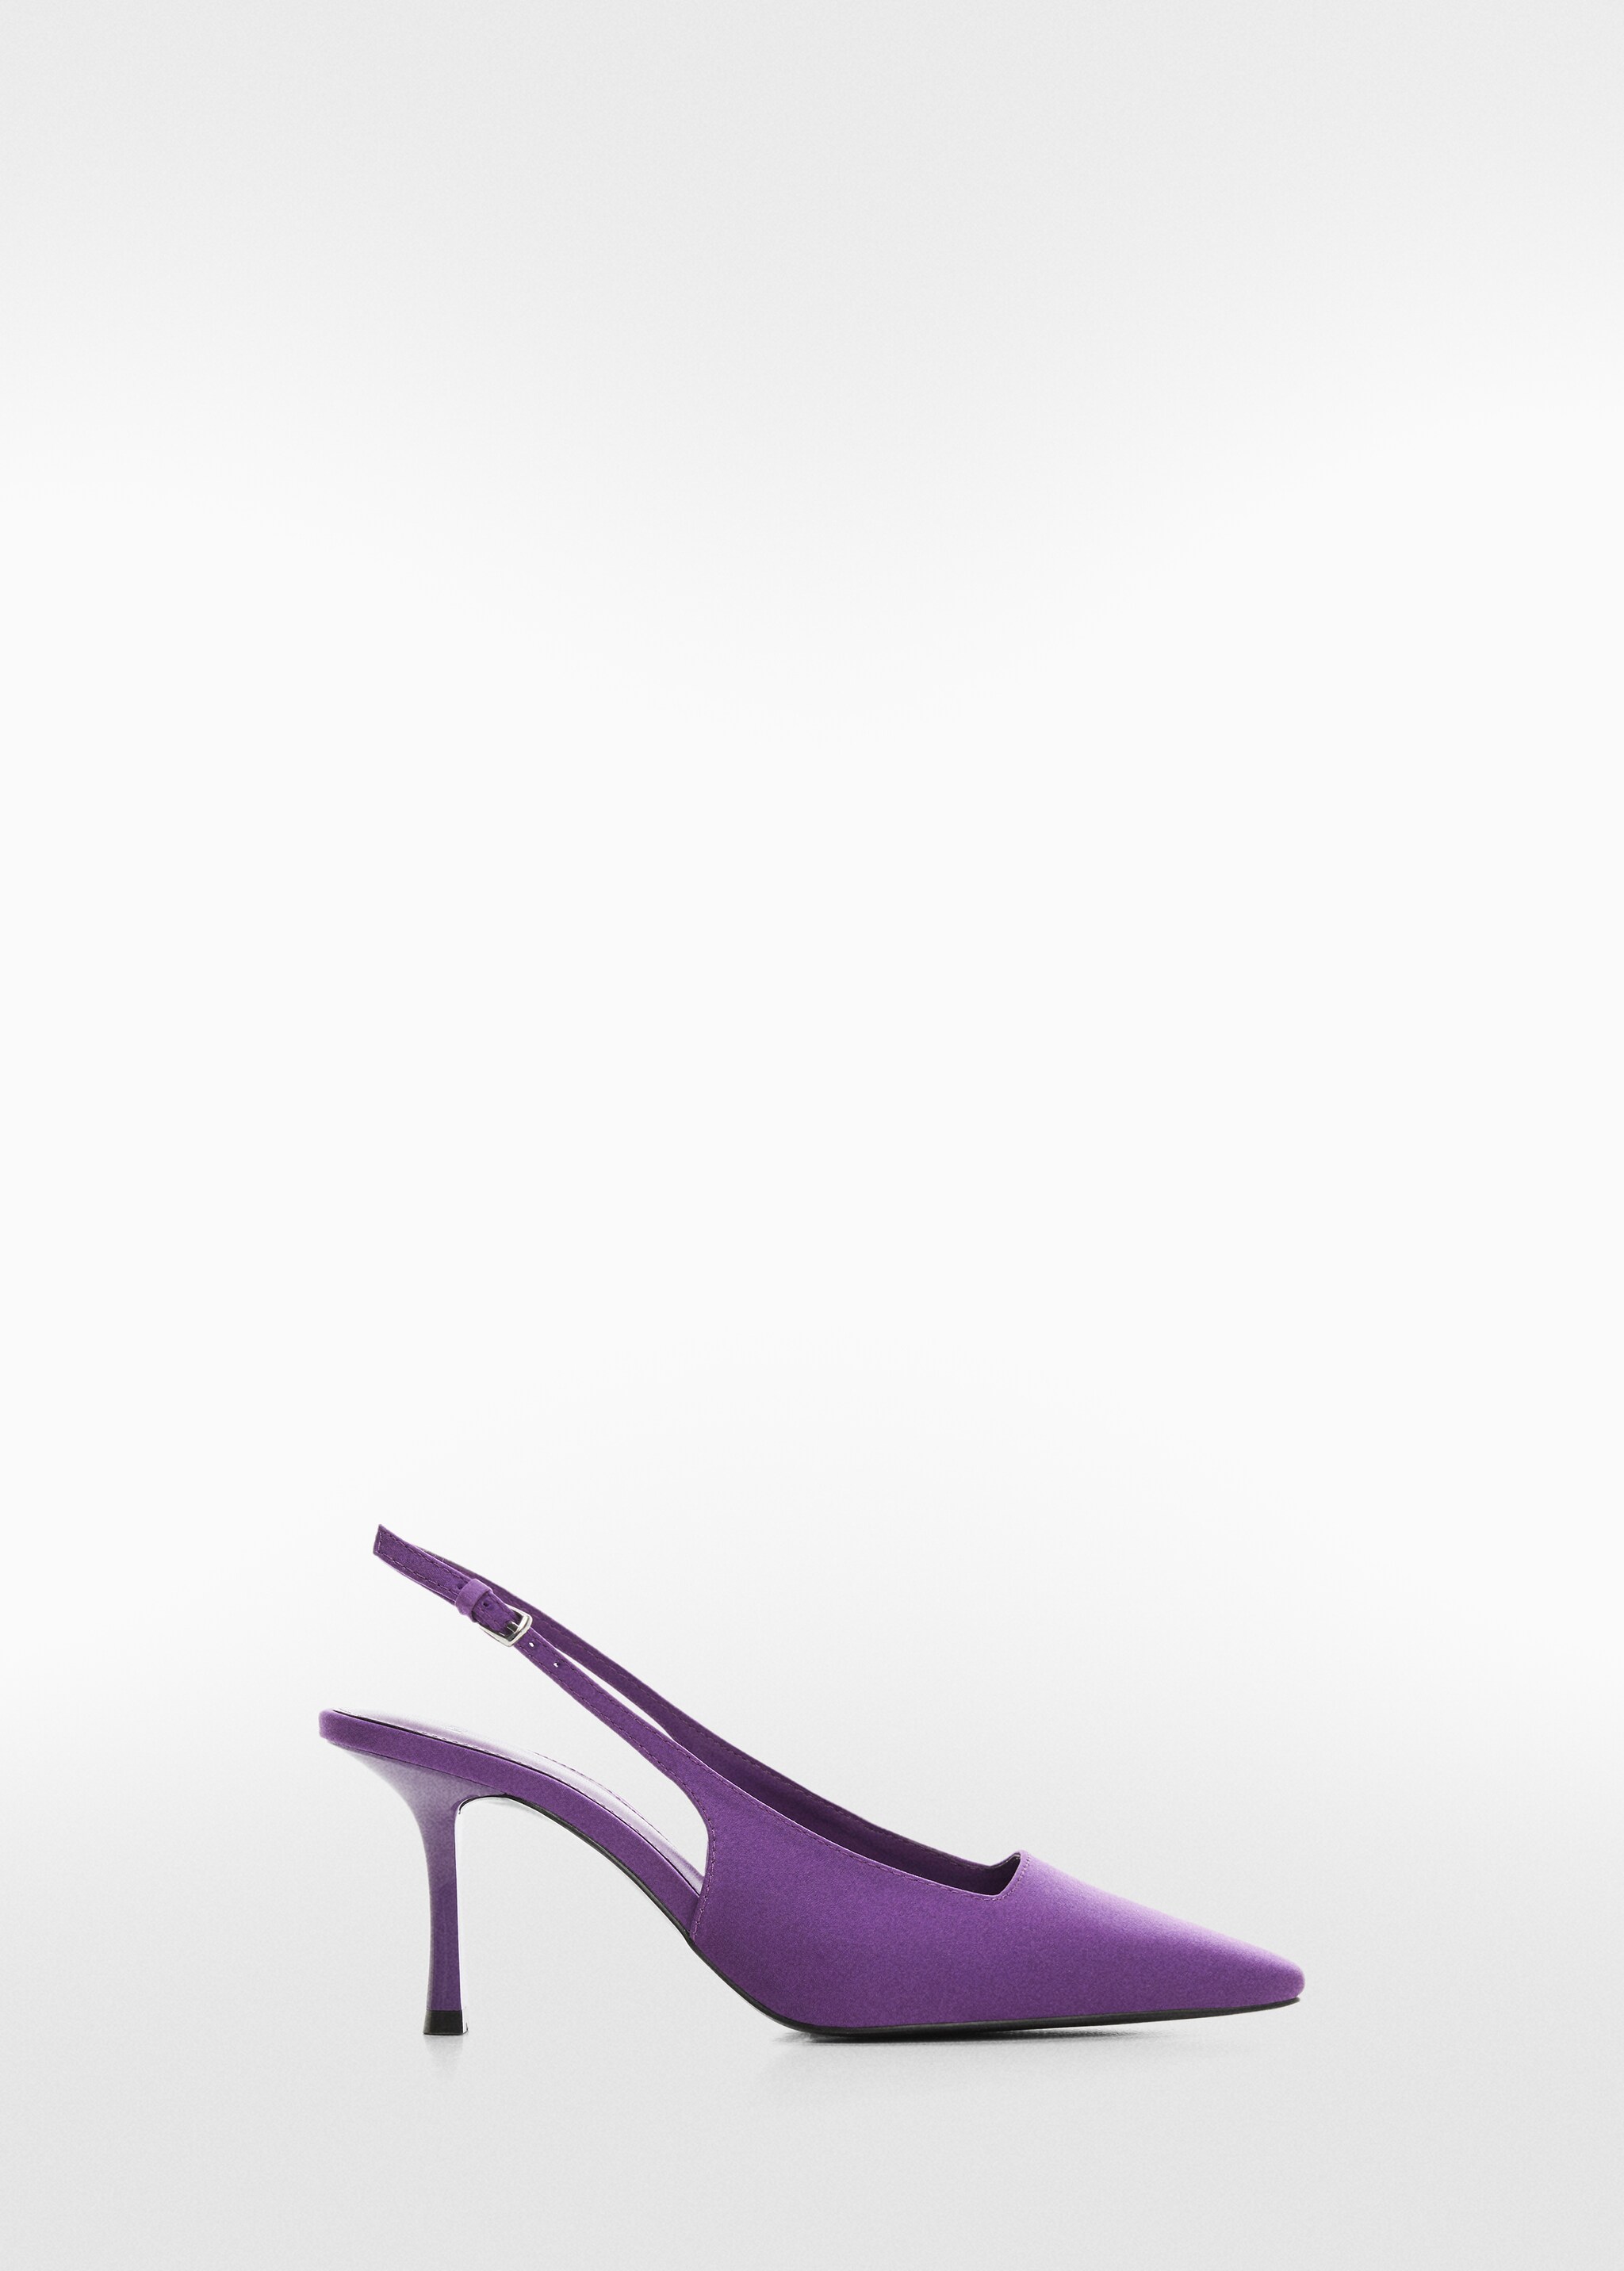 Sling back heel shoes - Προϊόν χωρίς μοντέλο